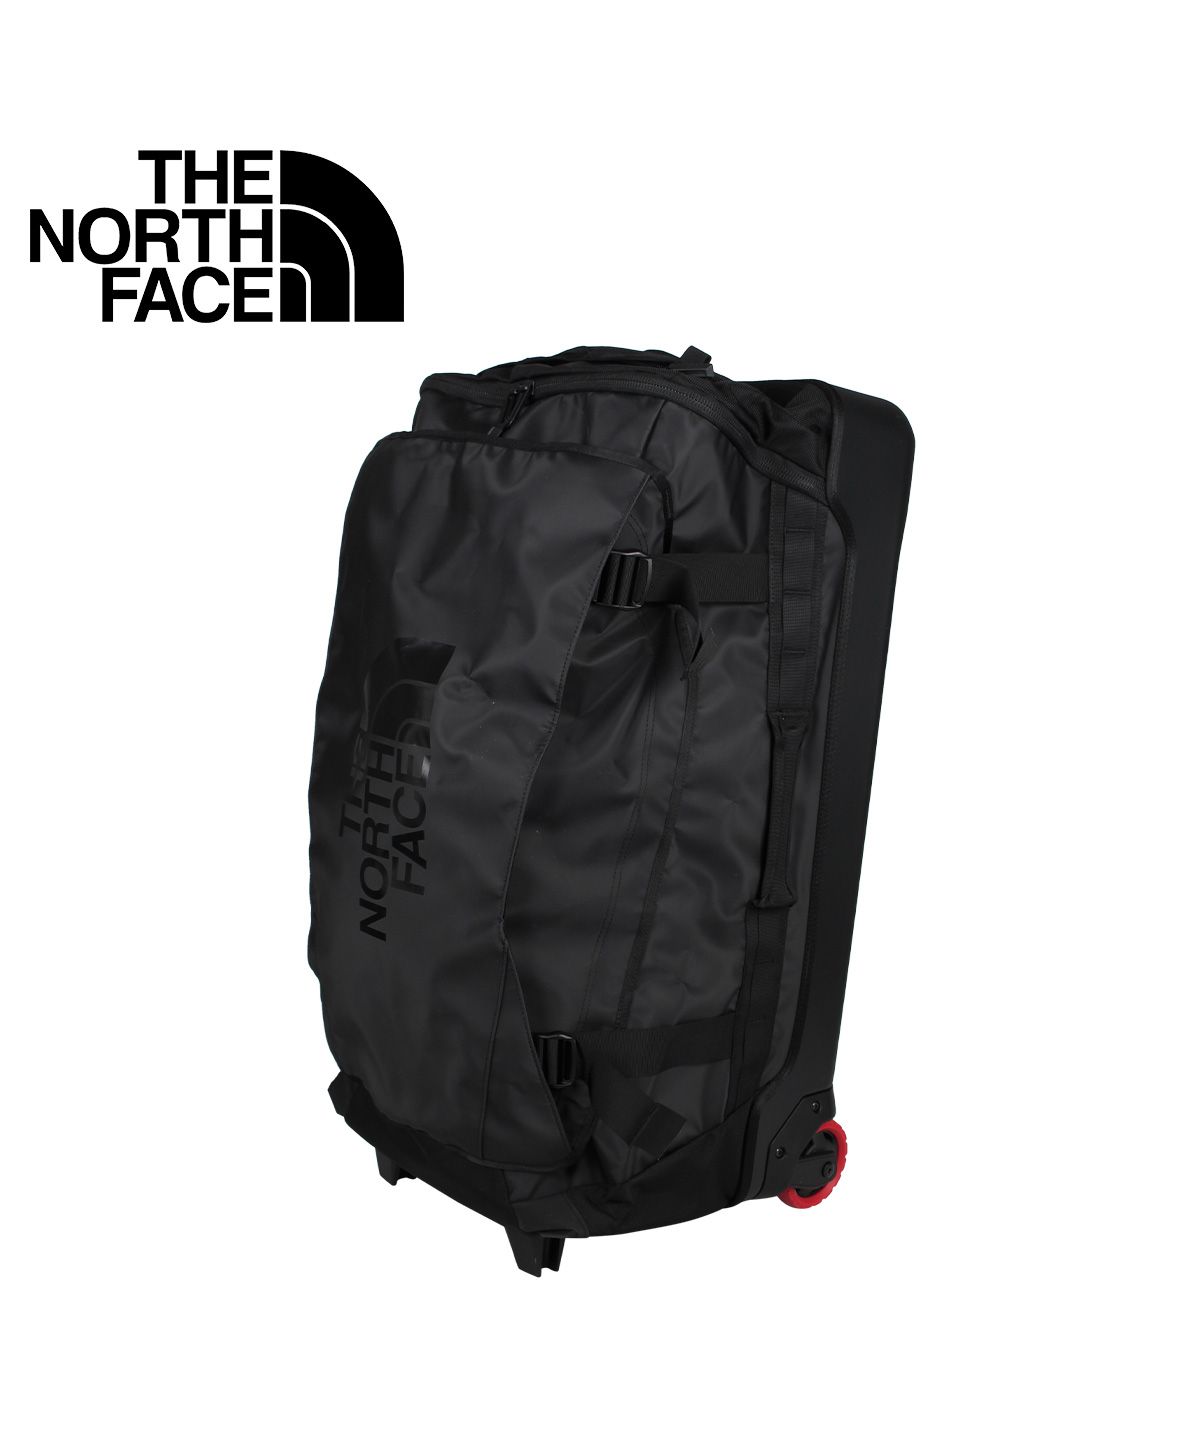 ノースフェイス THE NORTH FACE バッグ キャリーケース キャリーバッグ スーツケース メンズ レディース 80L ROLLING  THUNDER